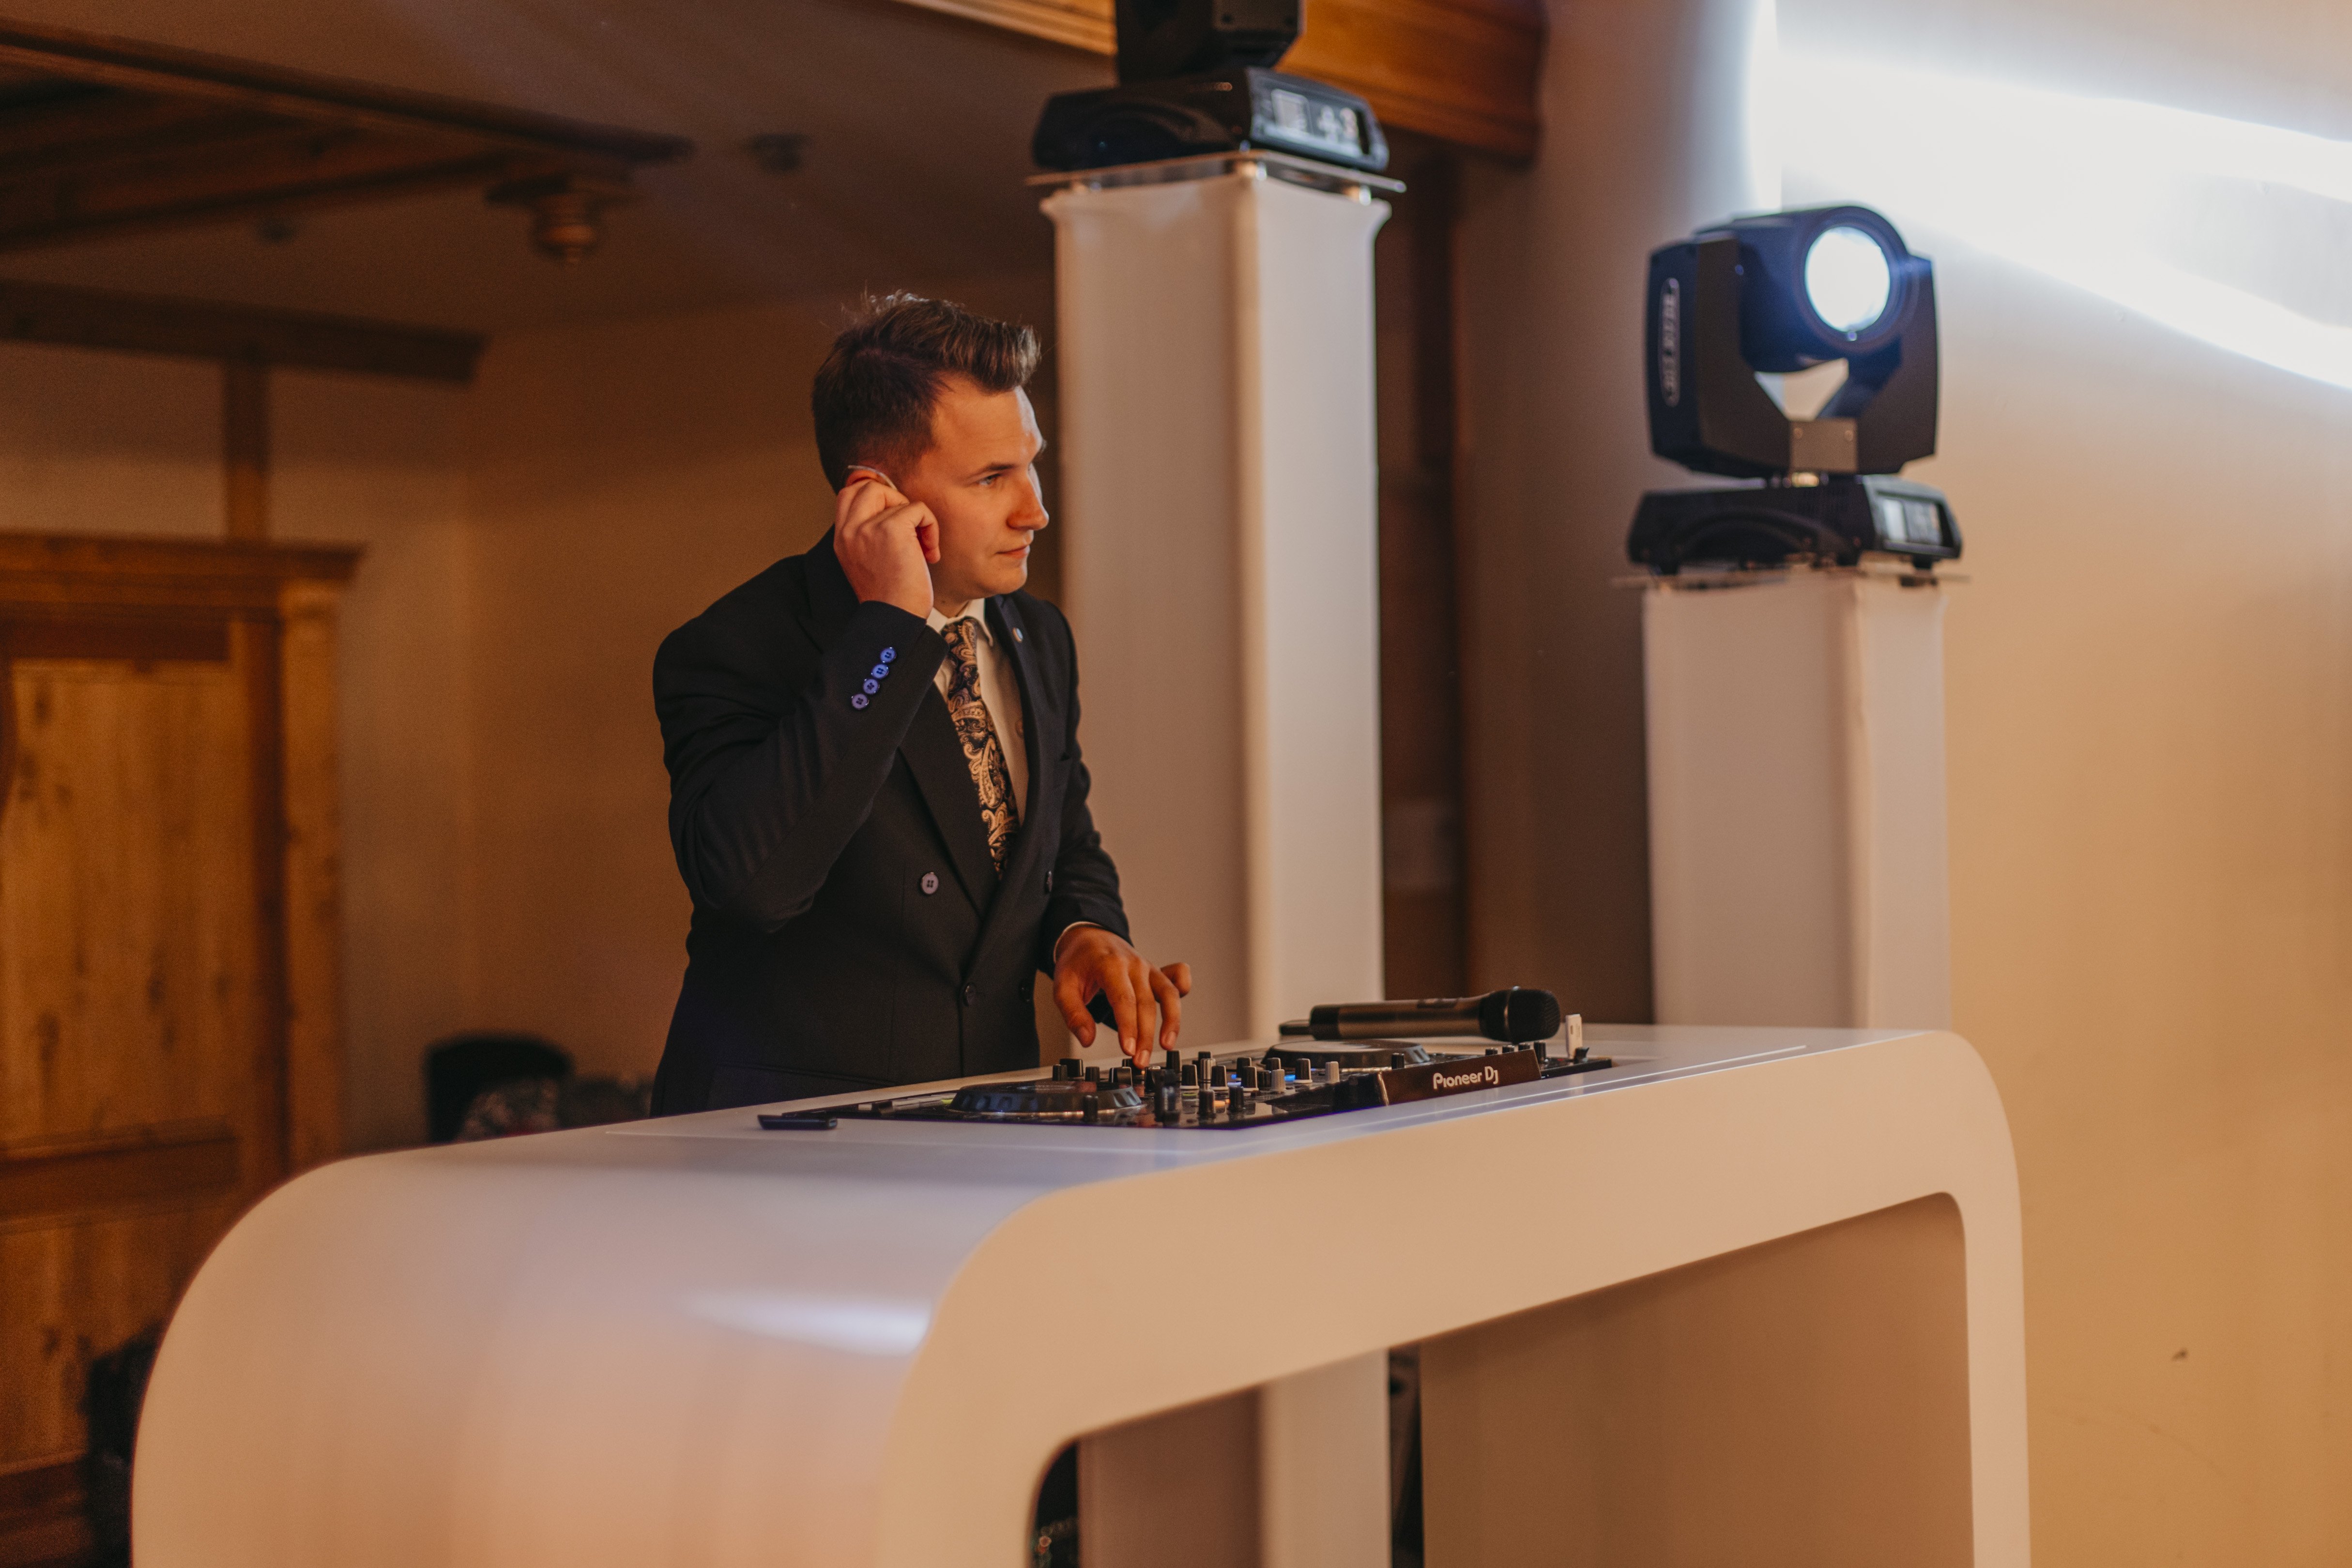 Wybór oprawy muzycznej na wesele: Zespół czy DJ? Plusy i minusy obu opcji